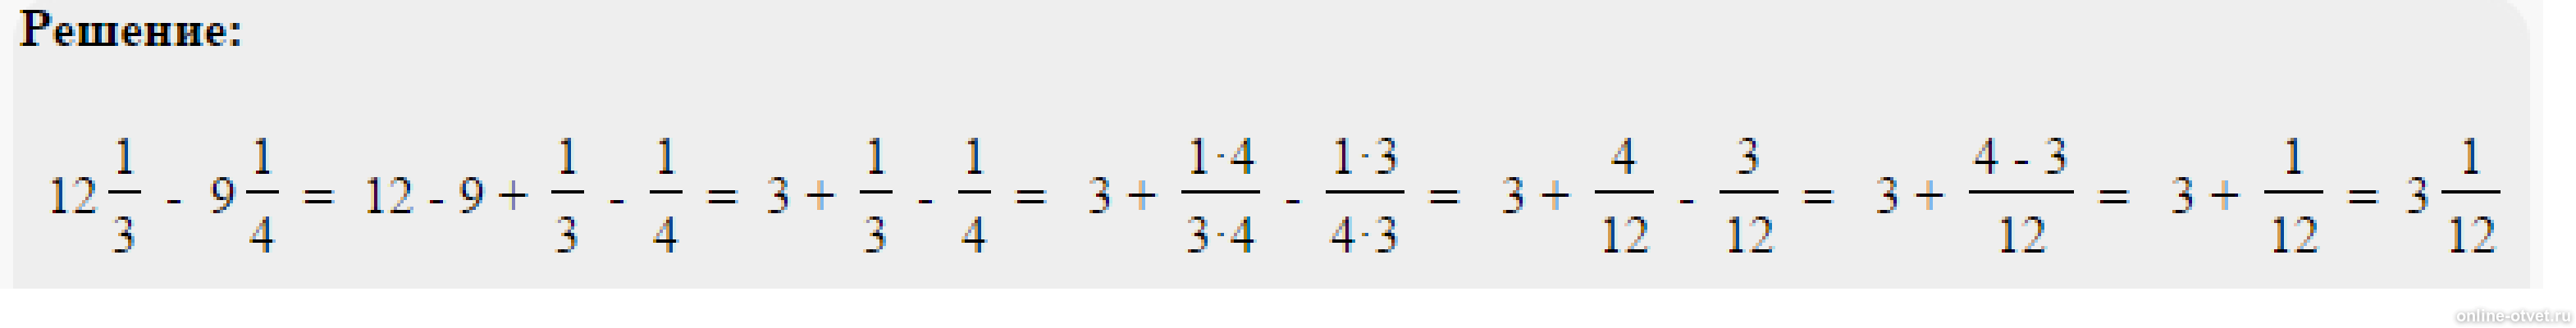 5 9 5 21 3 64. Решить пример одна целая одна пятая. Пример 4 целых3/8*2 целых 3/5*8/9. Решить пример 2 целых минус 1 целая 3/5. Минус 1 целая 3/8 минус 2 целых 5/12.